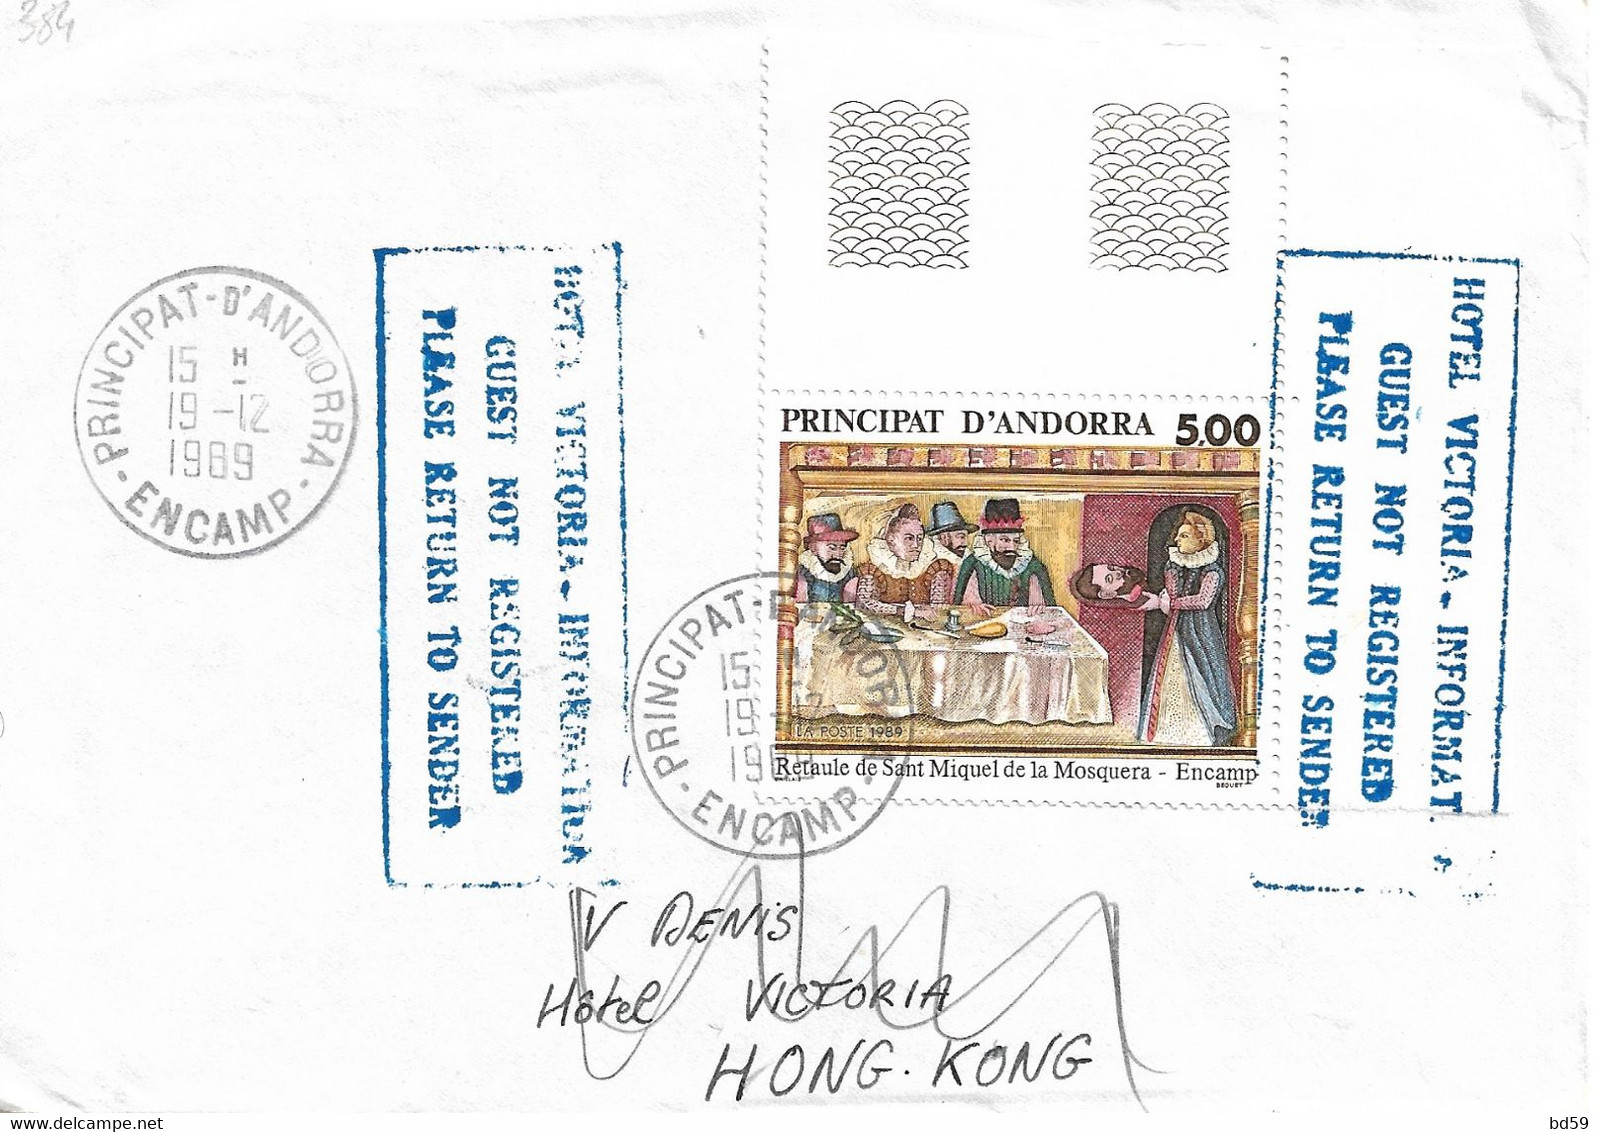 Timbres Sur Lettres 1989 N° 384 Retable Oblitération D'Encamp Cote 6,50€ - Storia Postale